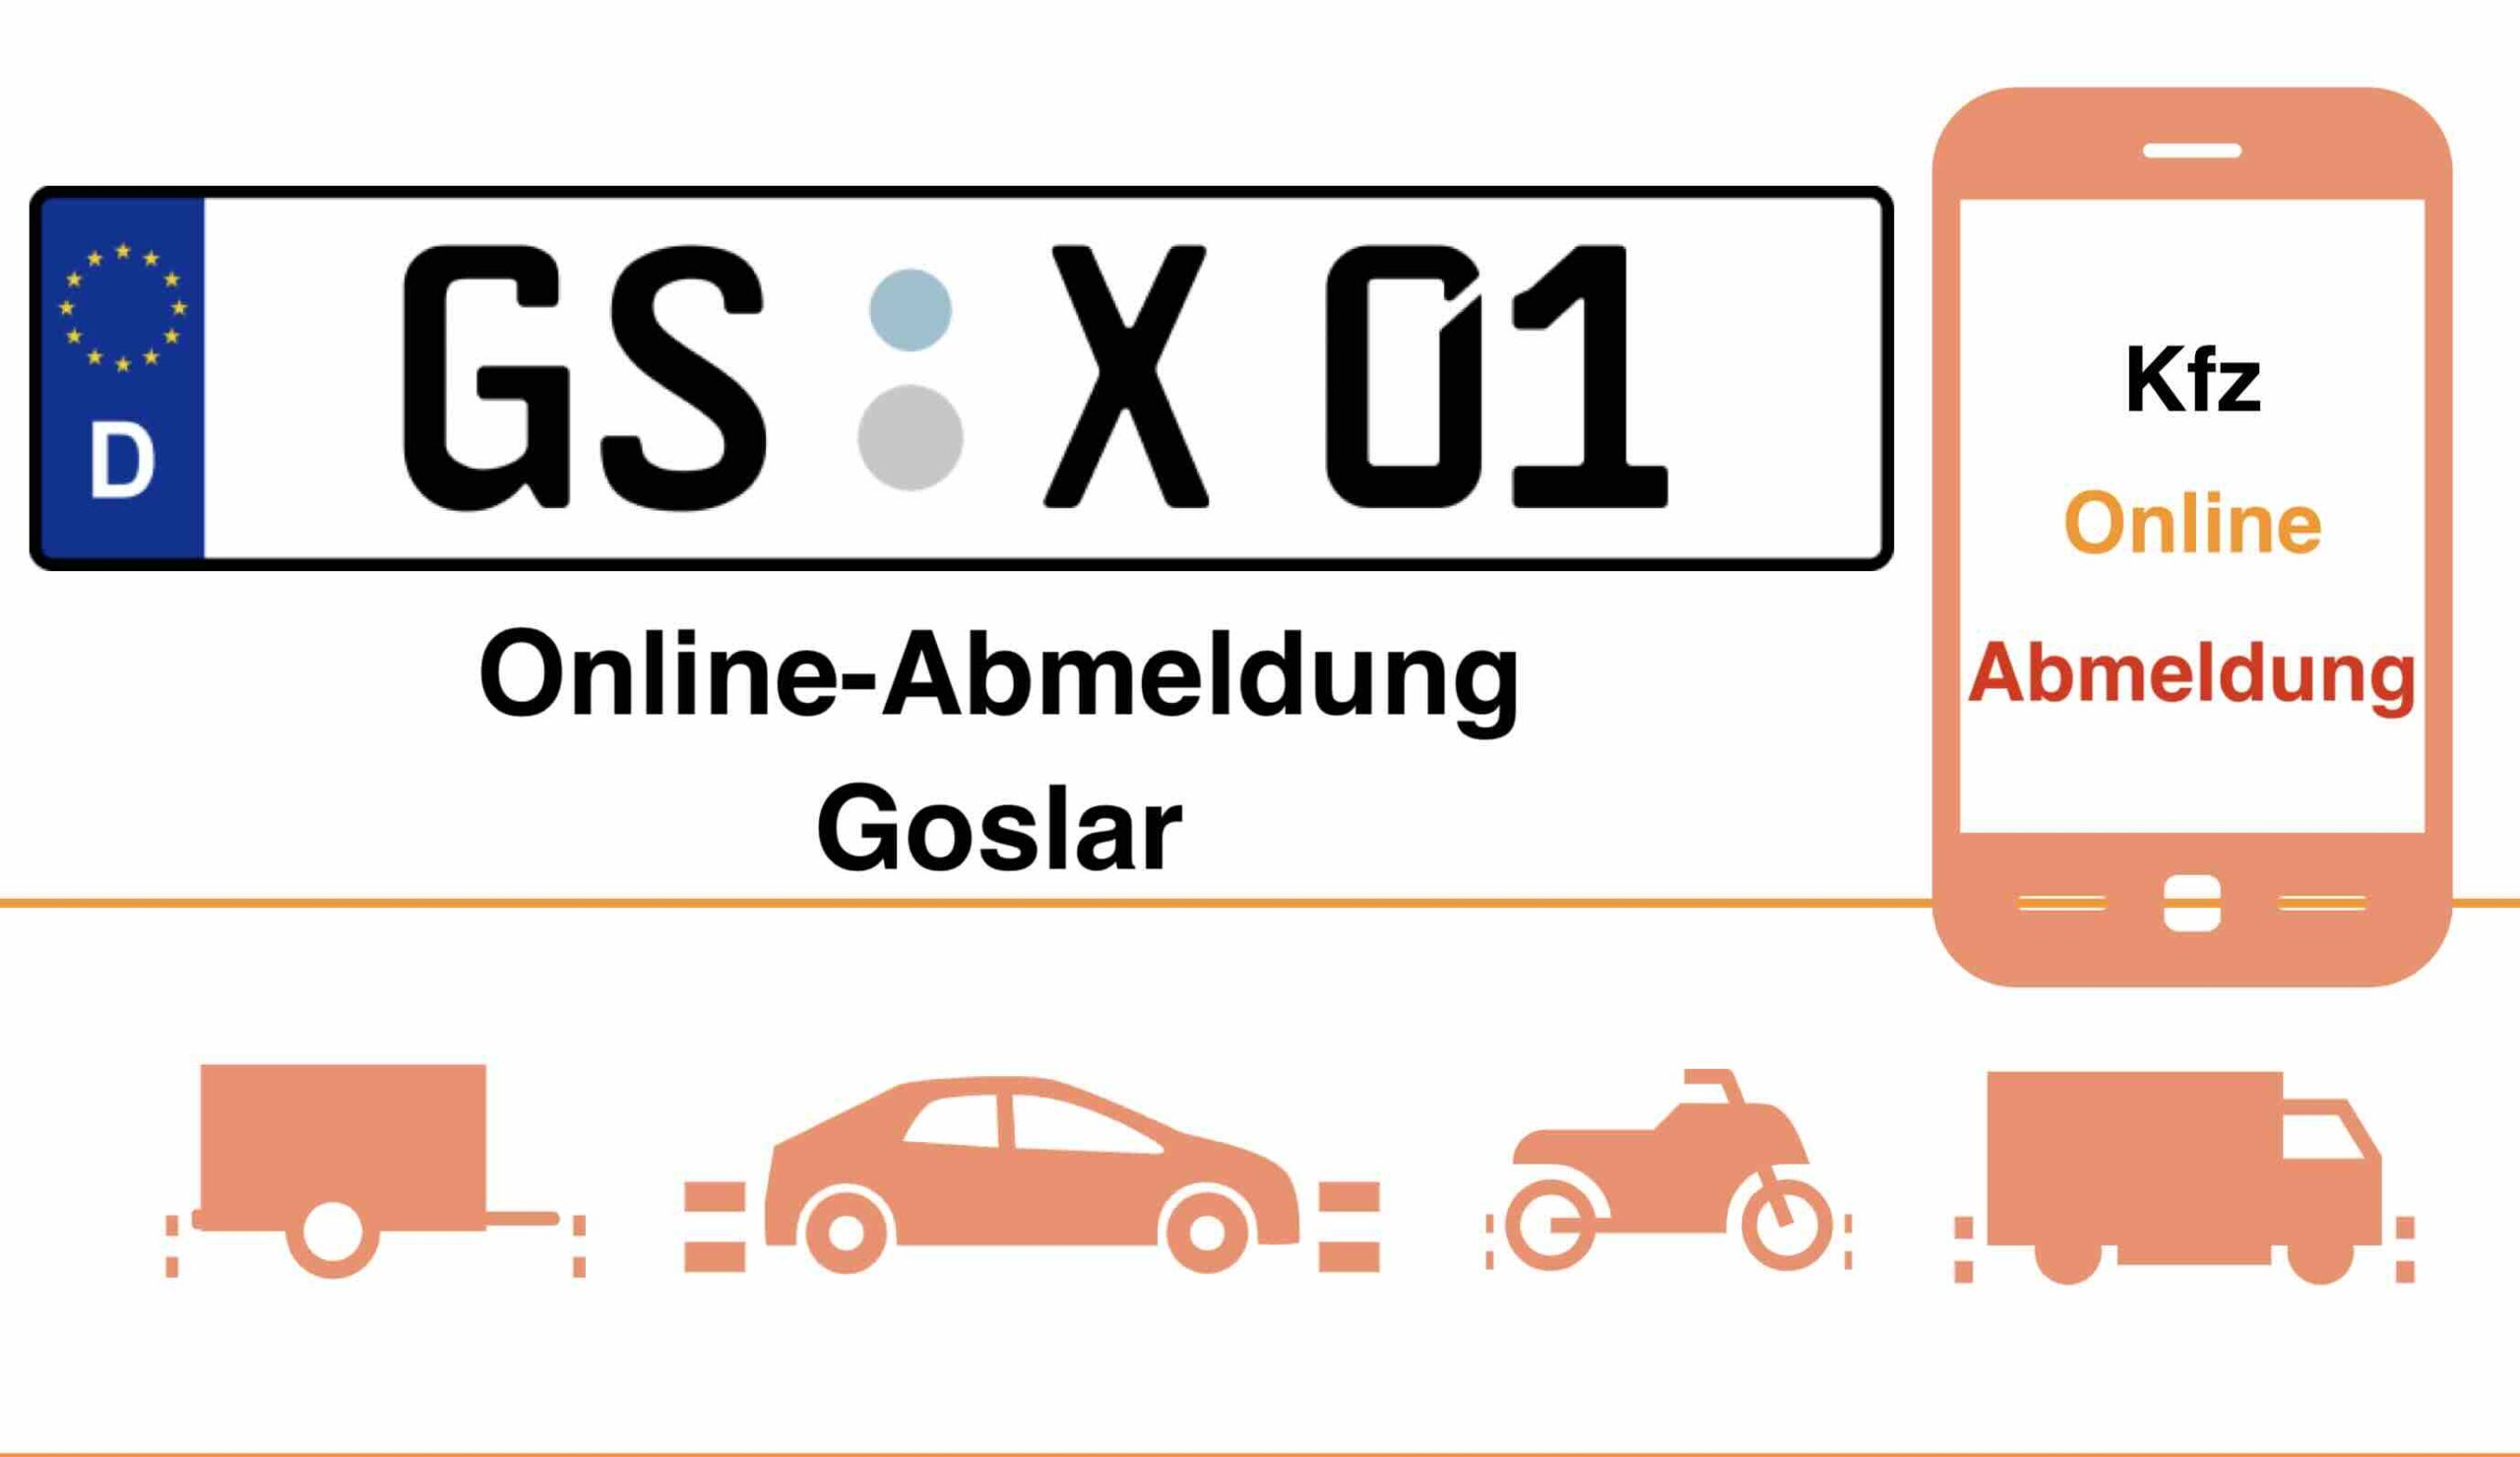 Online-Abmeldung in Goslar 